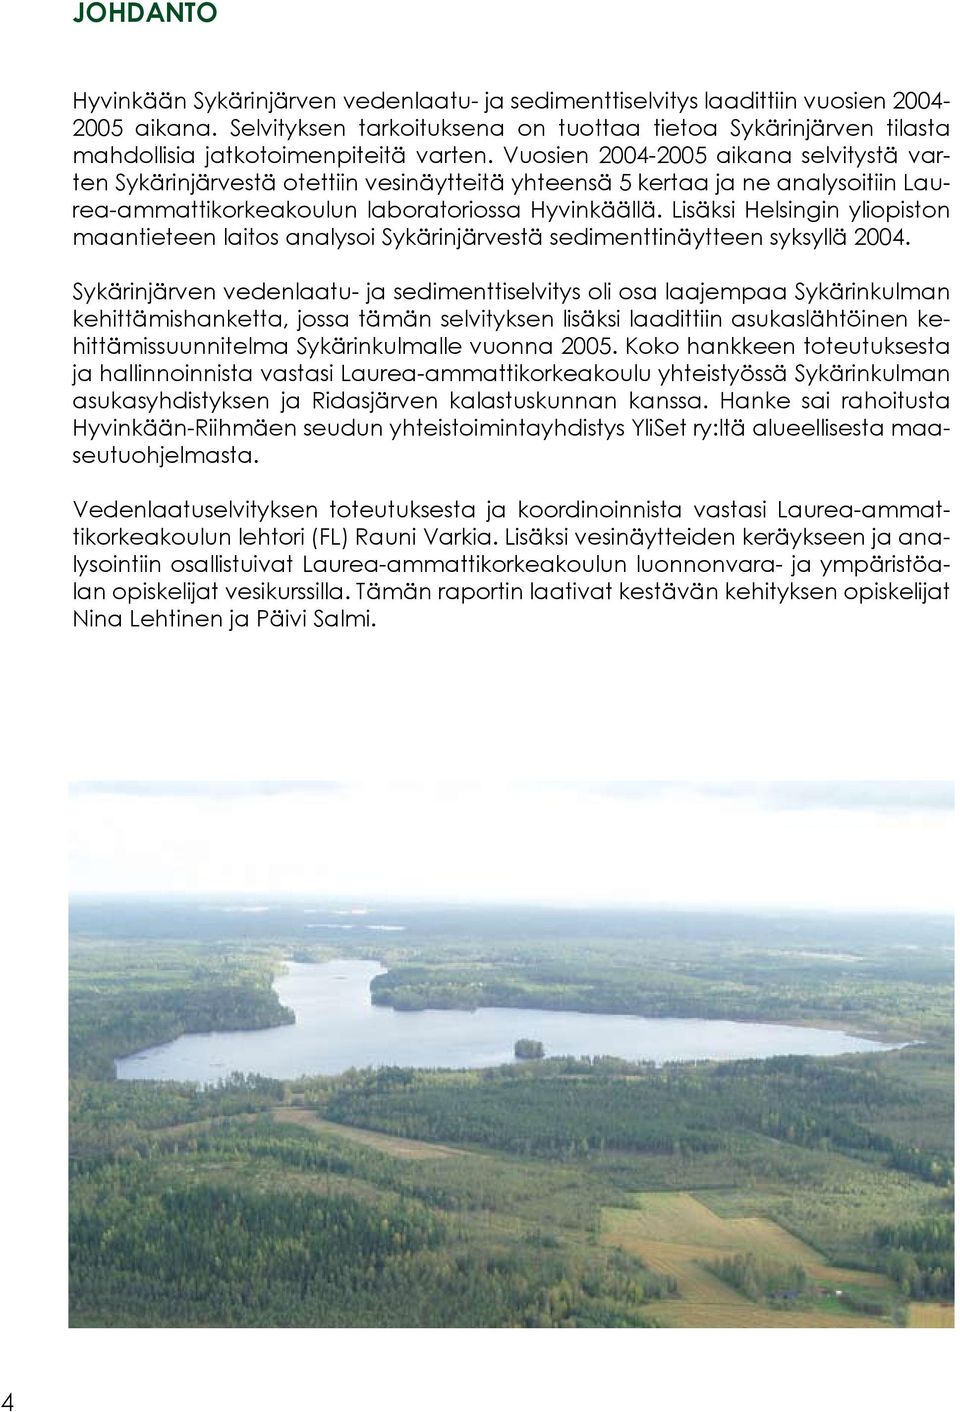 Vuosien 2004-2005 aikana selvitystä varten Sykärinjärvestä otettiin vesinäytteitä yhteensä 5 kertaa ja ne analysoitiin Laurea-ammattikorkeakoulun laboratoriossa Hyvinkäällä.